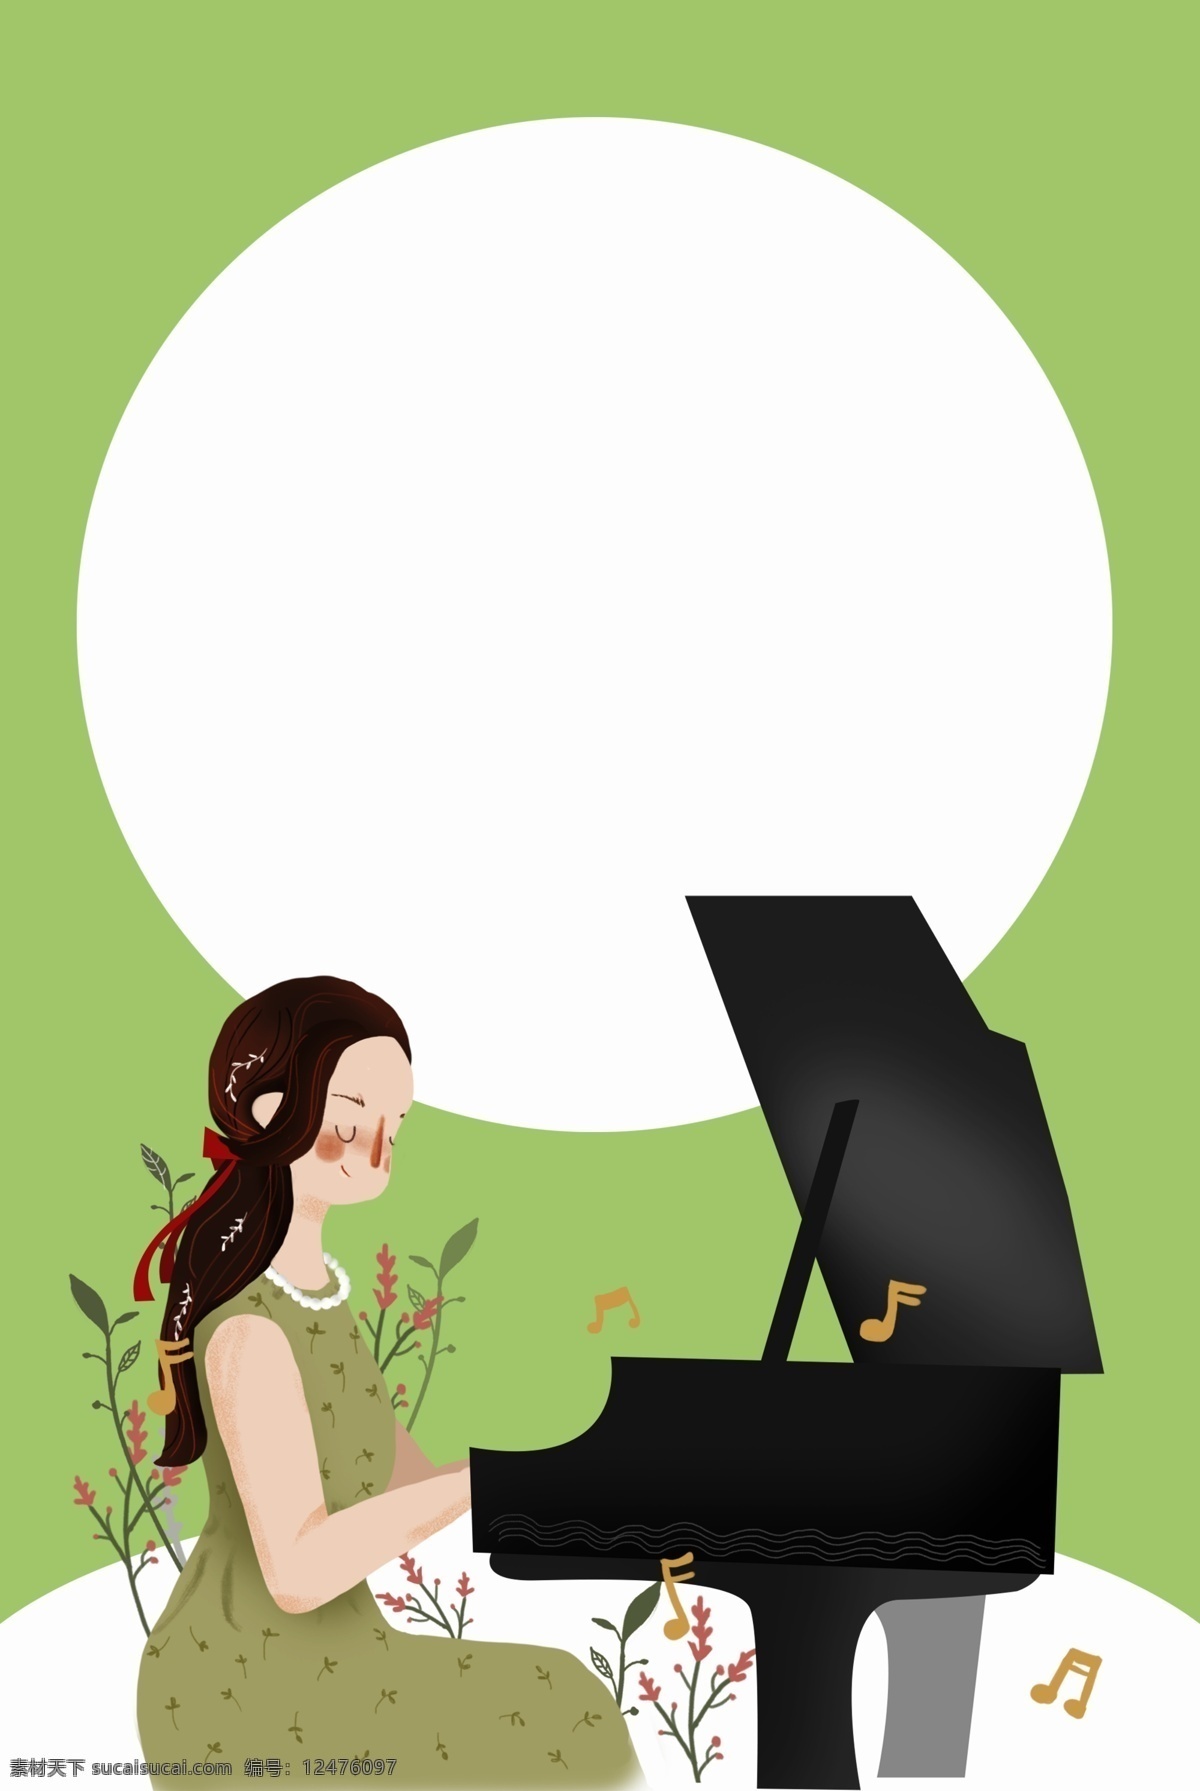 一个 女孩 绿色 环境 里 弹 钢琴 可爱 文艺 清新 五线谱 琴键 开心 音乐 乐曲 乐器